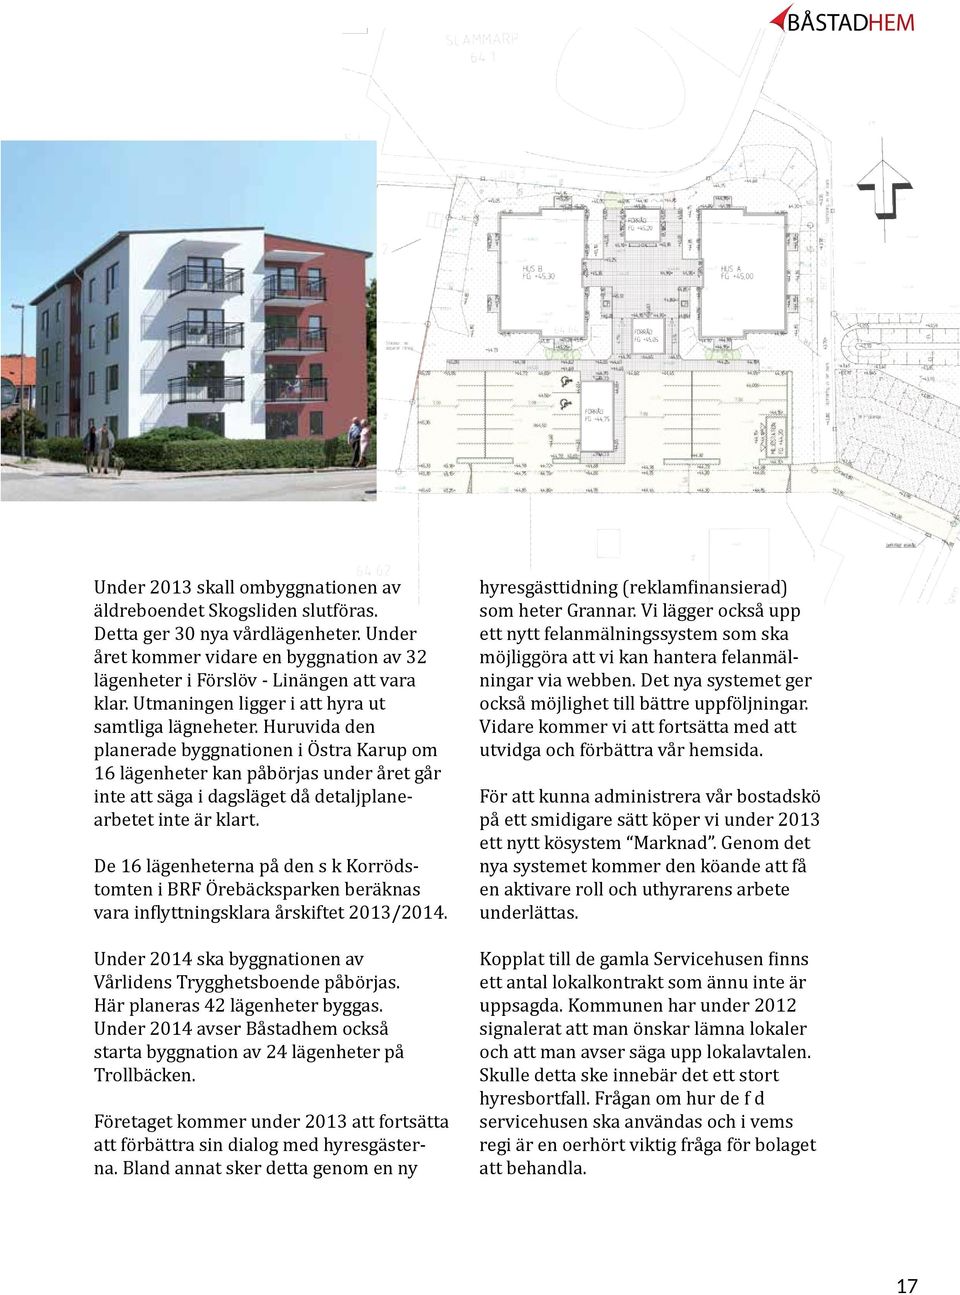 Huruvida den planerade byggnationen i Östra Karup om 16 lägenheter kan påbörjas under året går inte att säga i dagsläget då detaljplanearbetet inte är klart.